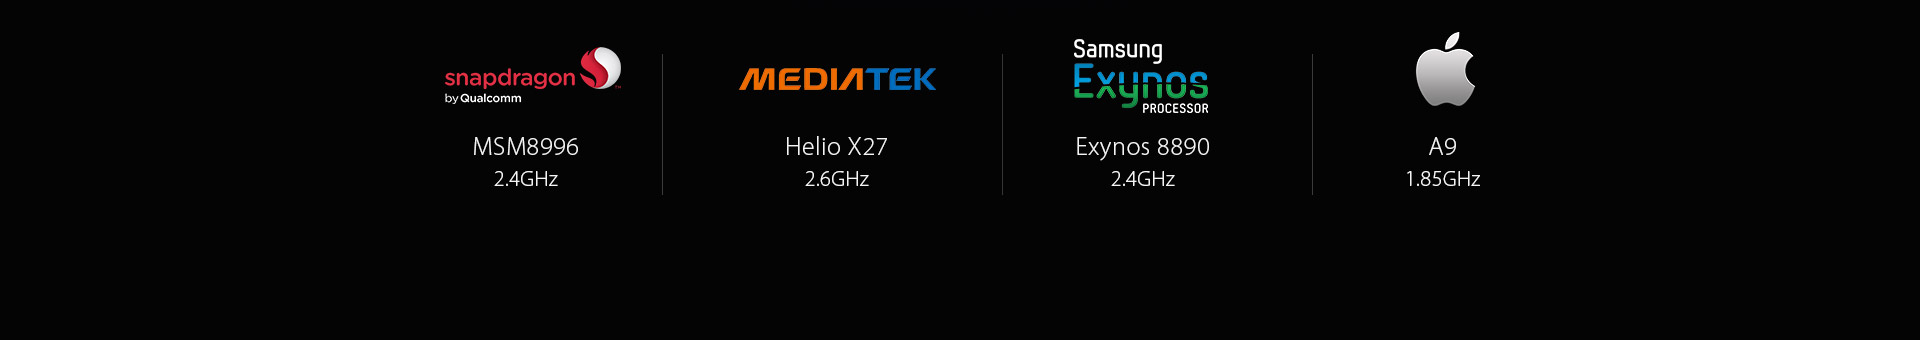 UMI Z 5.5 Inch Dual 3D Edge 4GB RAM 32GB ROM MediaTek Helio X27 Deca Core 2.6Ghz 4G Smartphone